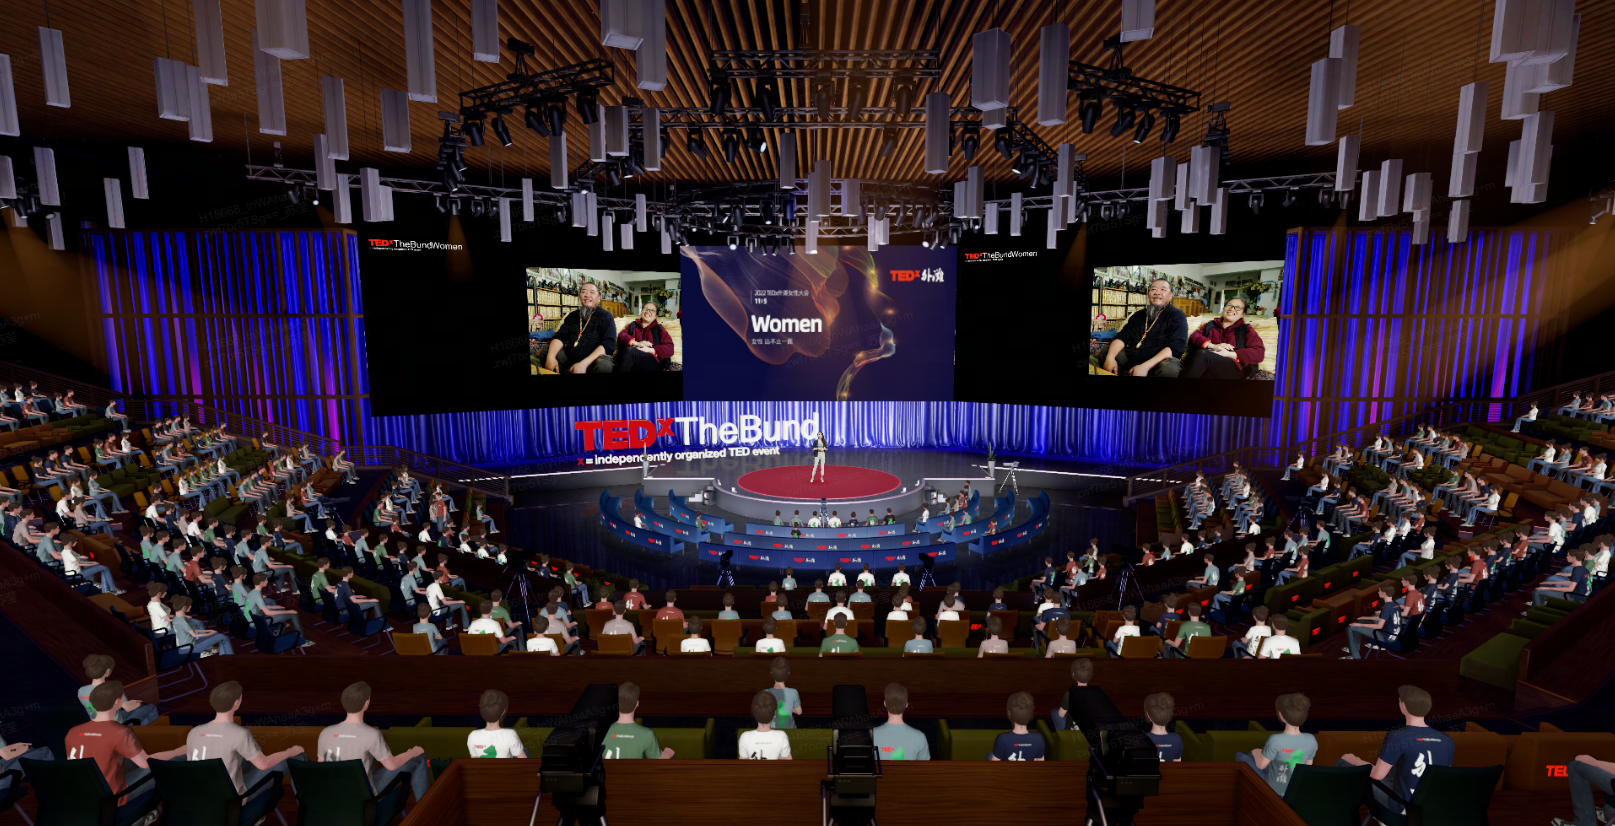 这是一场TEDx活动的现场图片，演讲者站在圆形舞台上，观众在听讲，场馆内氛围庄重，科技感强烈。